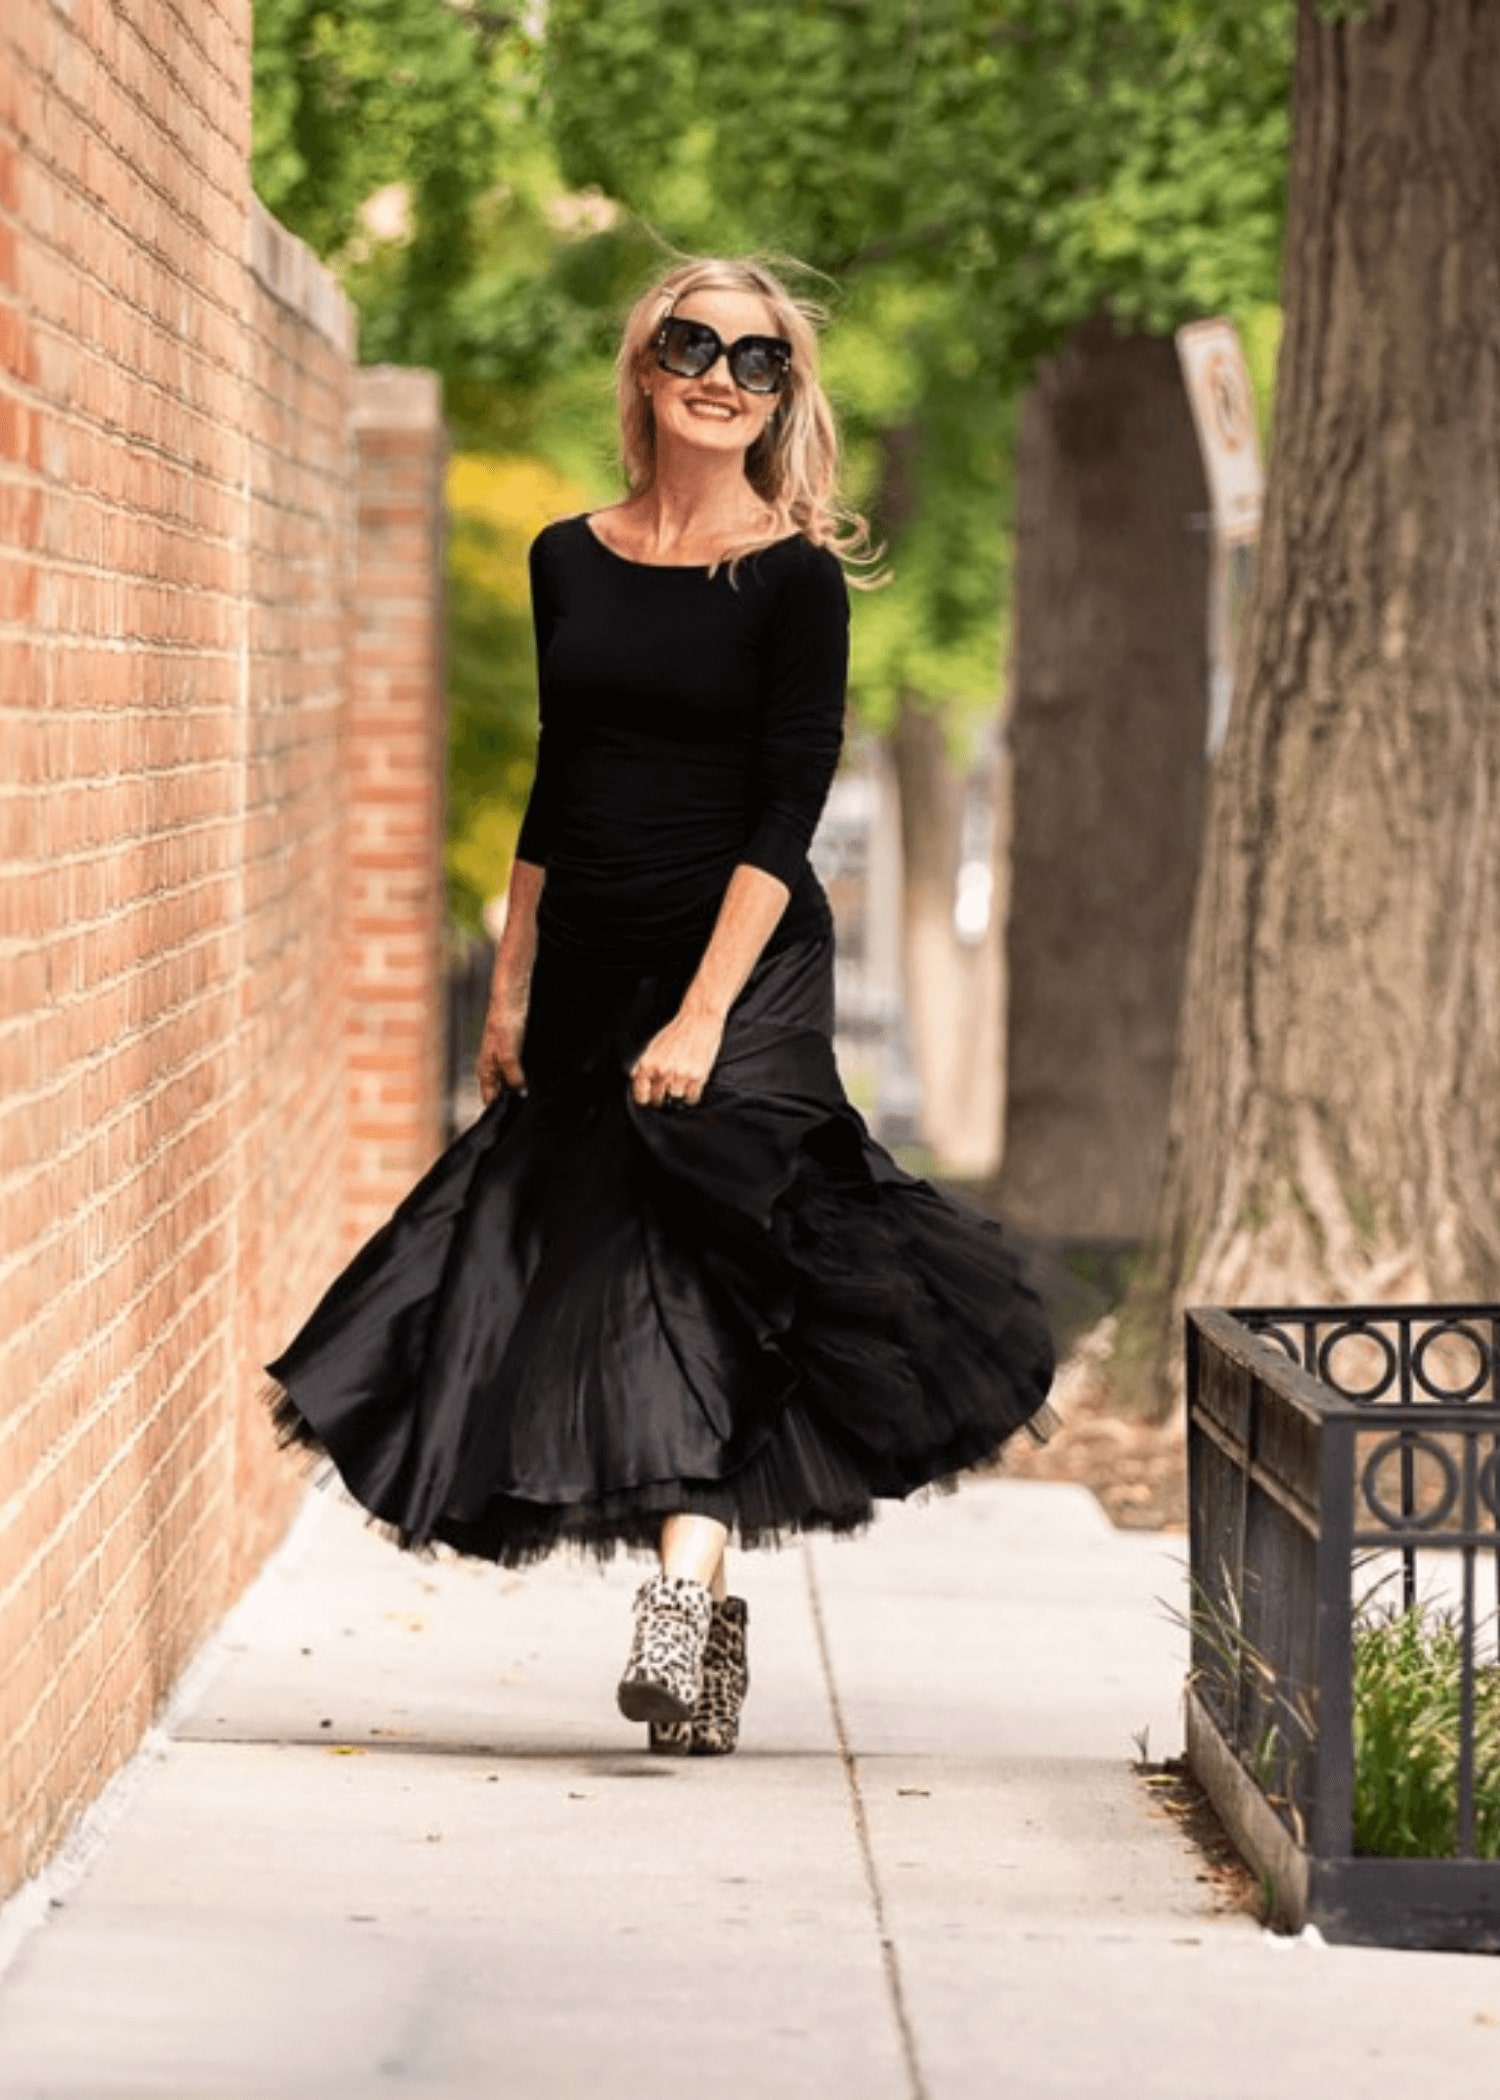 Kimberly black dress walking outside